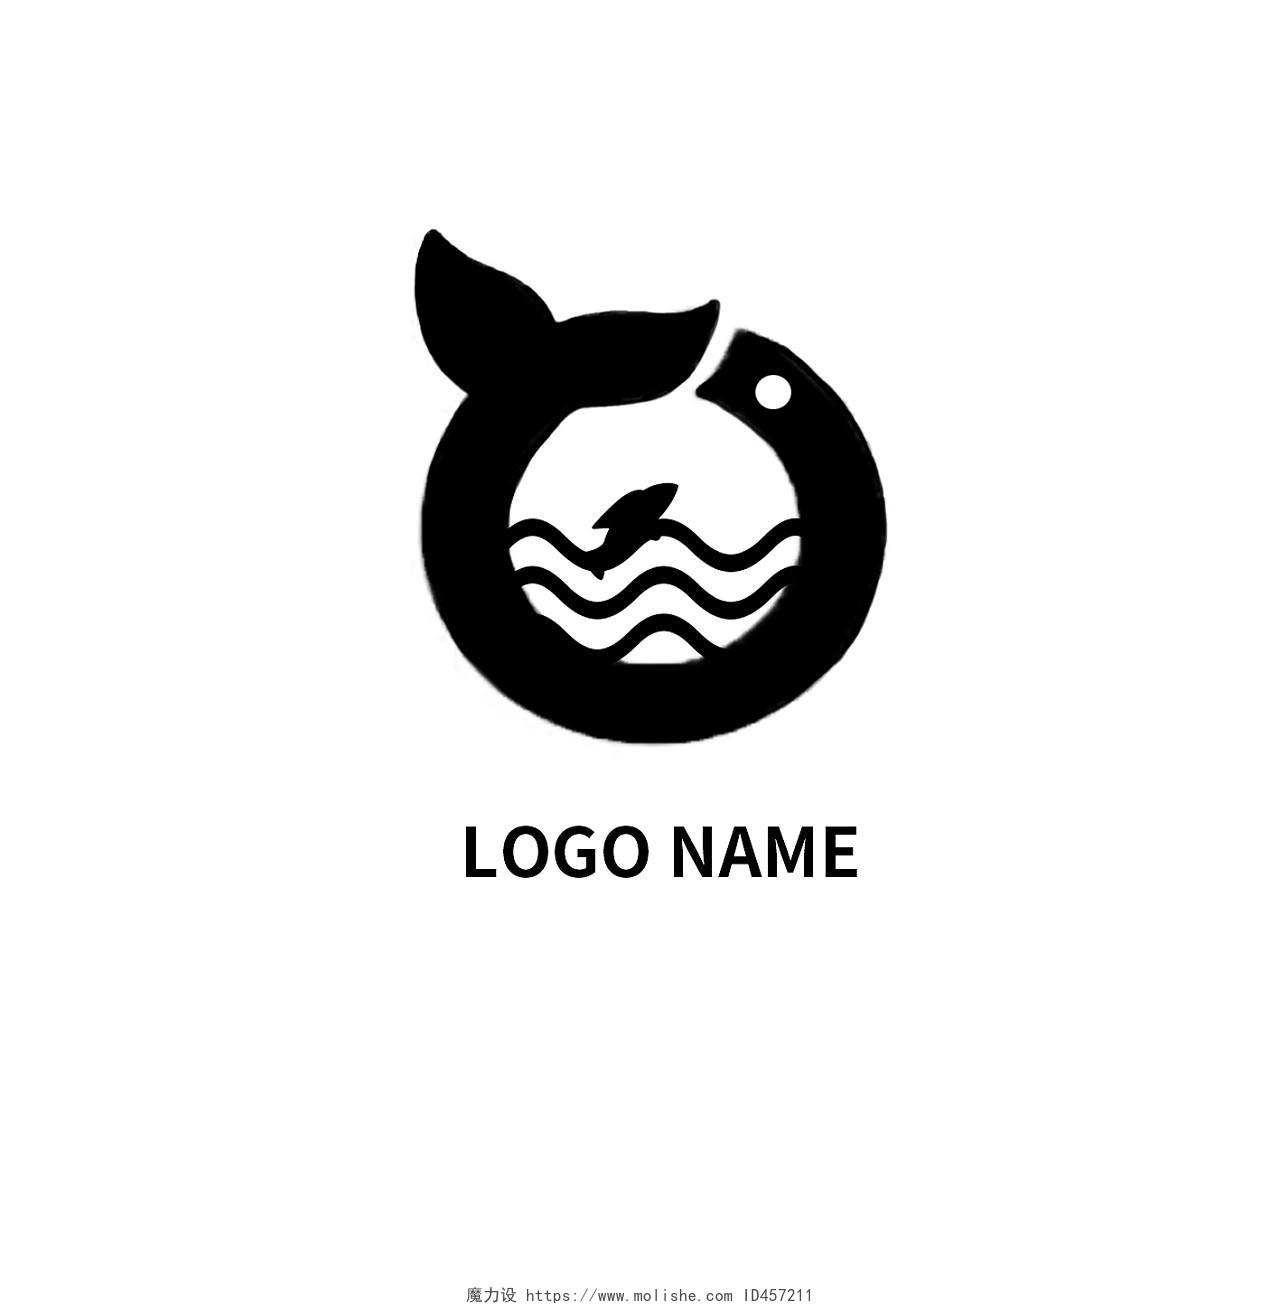 白色背景黑色标志logoname简约可爱logo设计